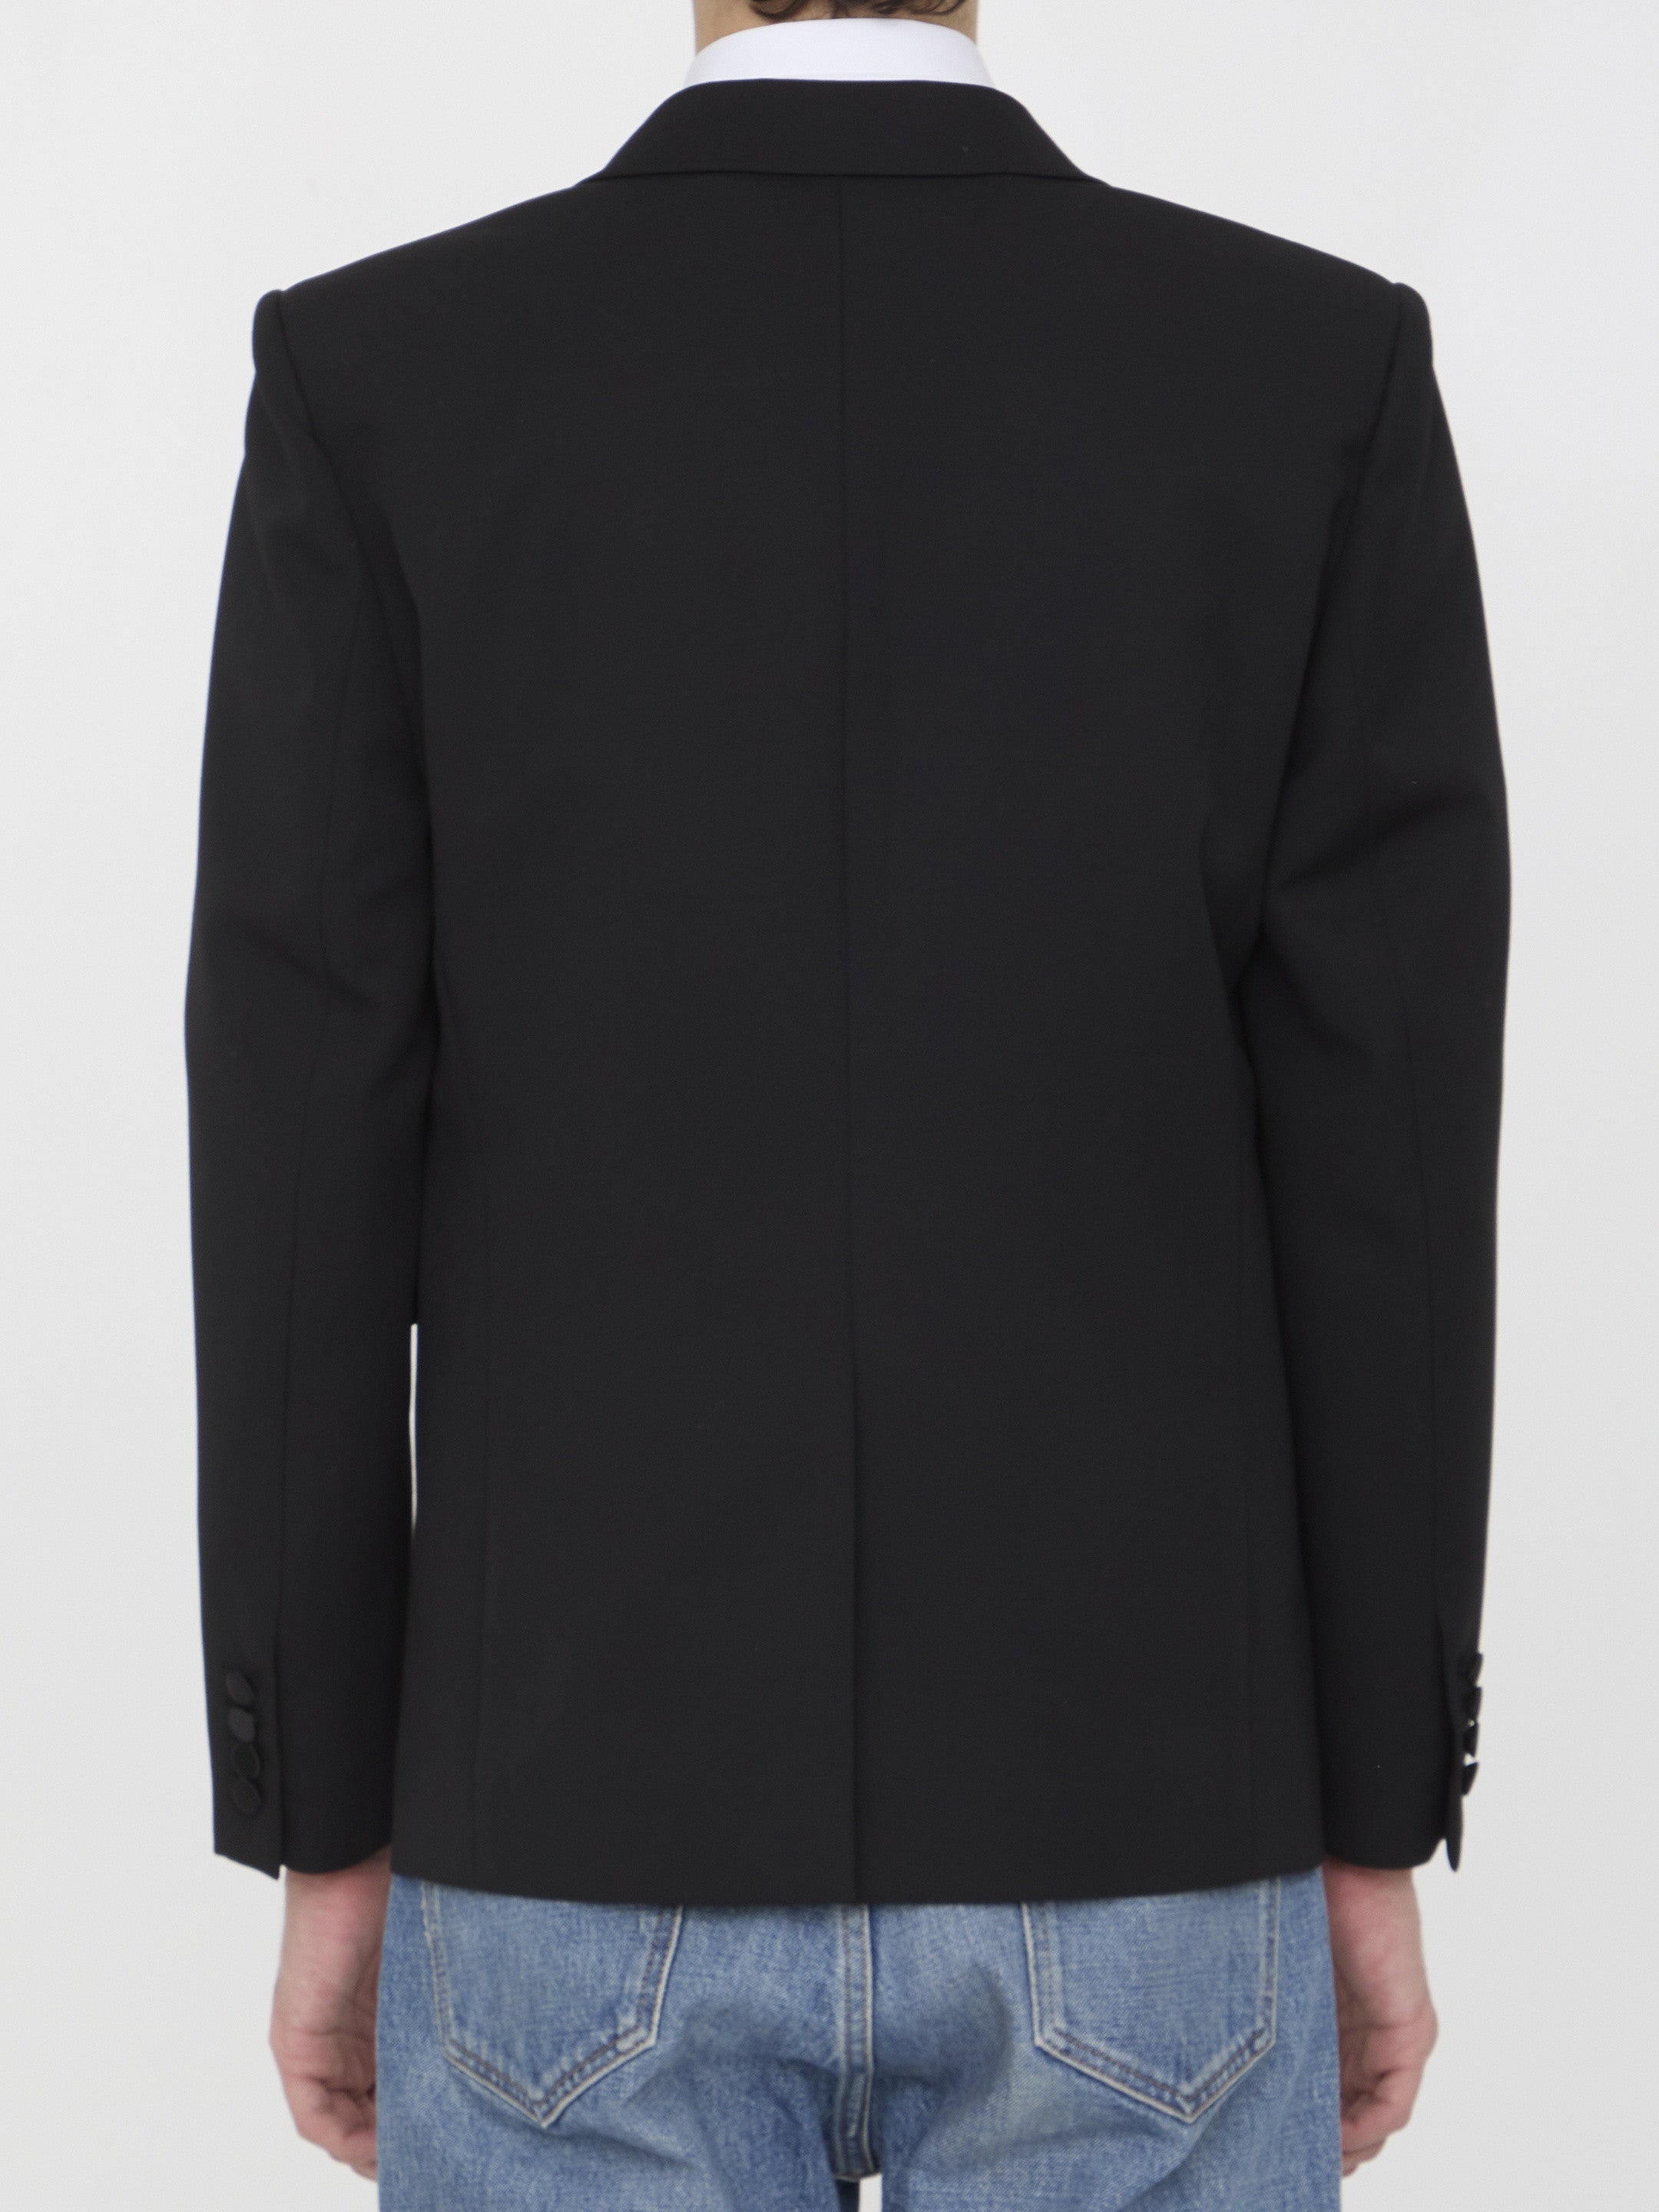 SAINT-LAURENT-OUTLET-SALE-Tuxedo-jacket-in-grain-de-poudre-Jacken-Mantel-ARCHIVE-COLLECTION-4.jpg